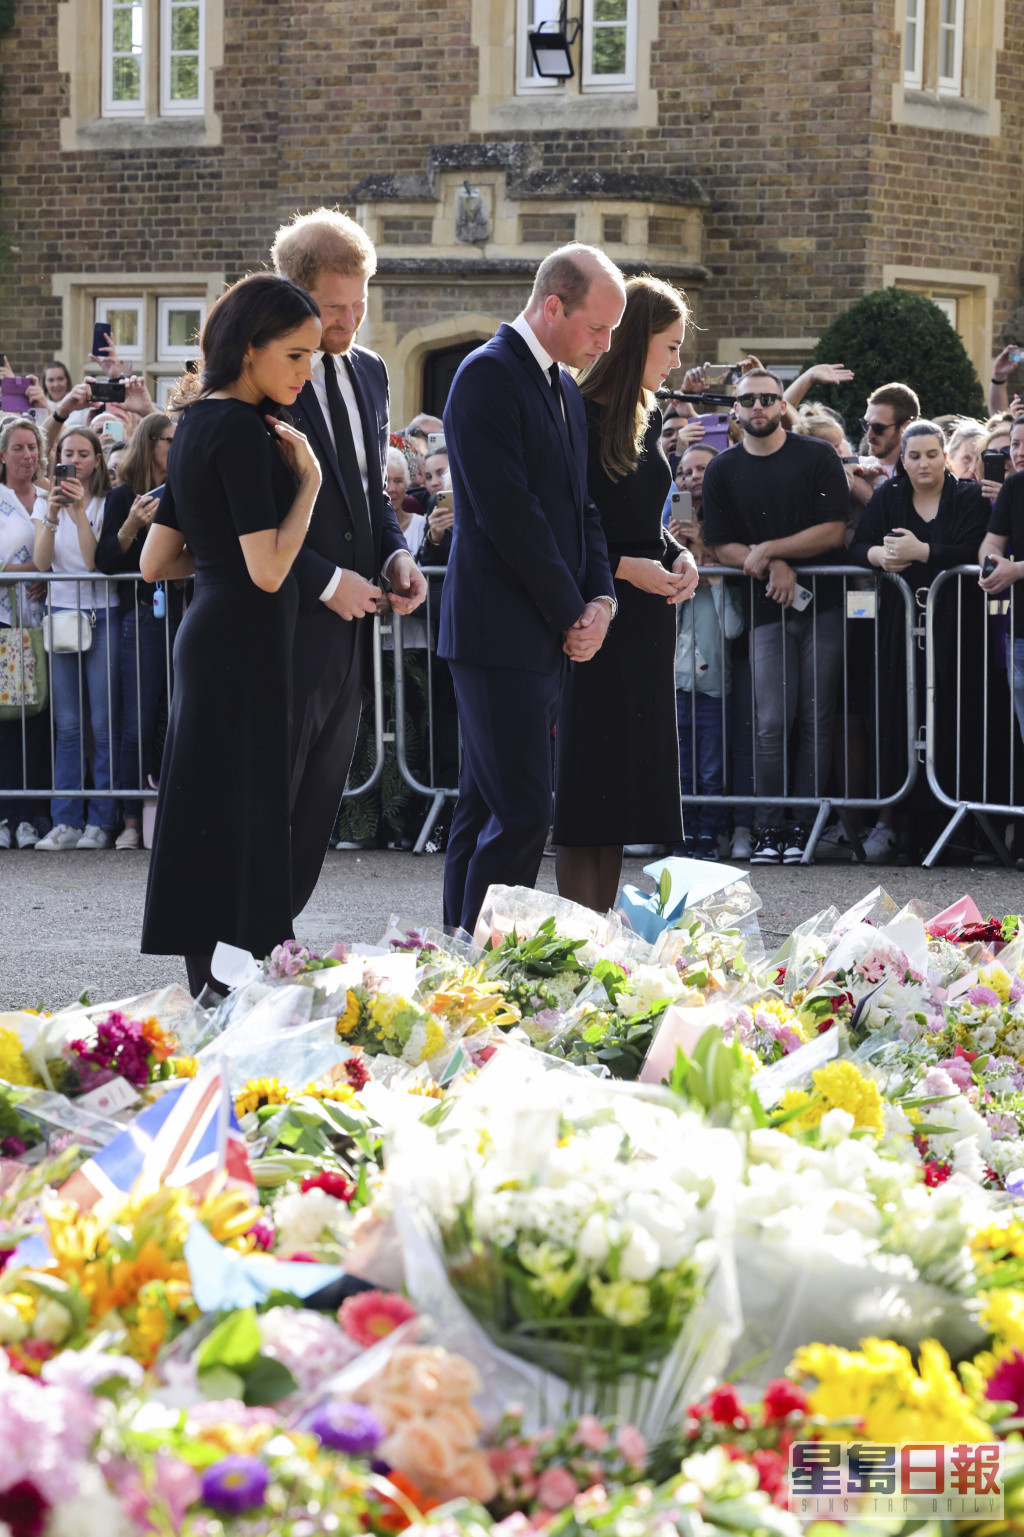 4人用心看民眾擺放在溫莎堡閘外悼念女皇的鮮花及留言。AP